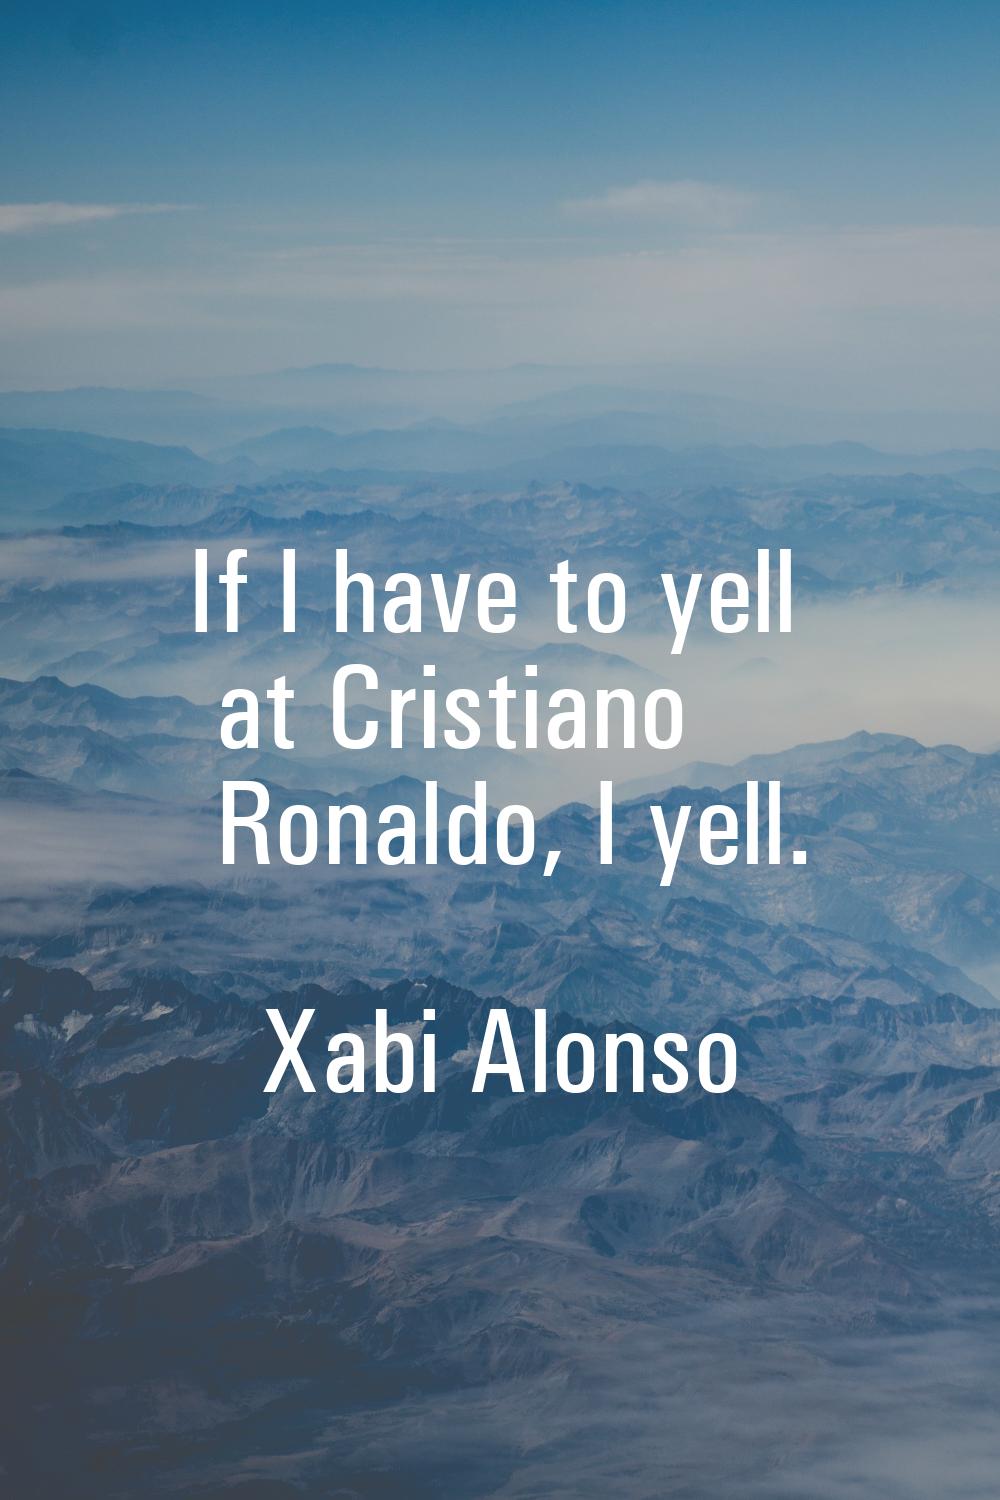 If I have to yell at Cristiano Ronaldo, I yell.